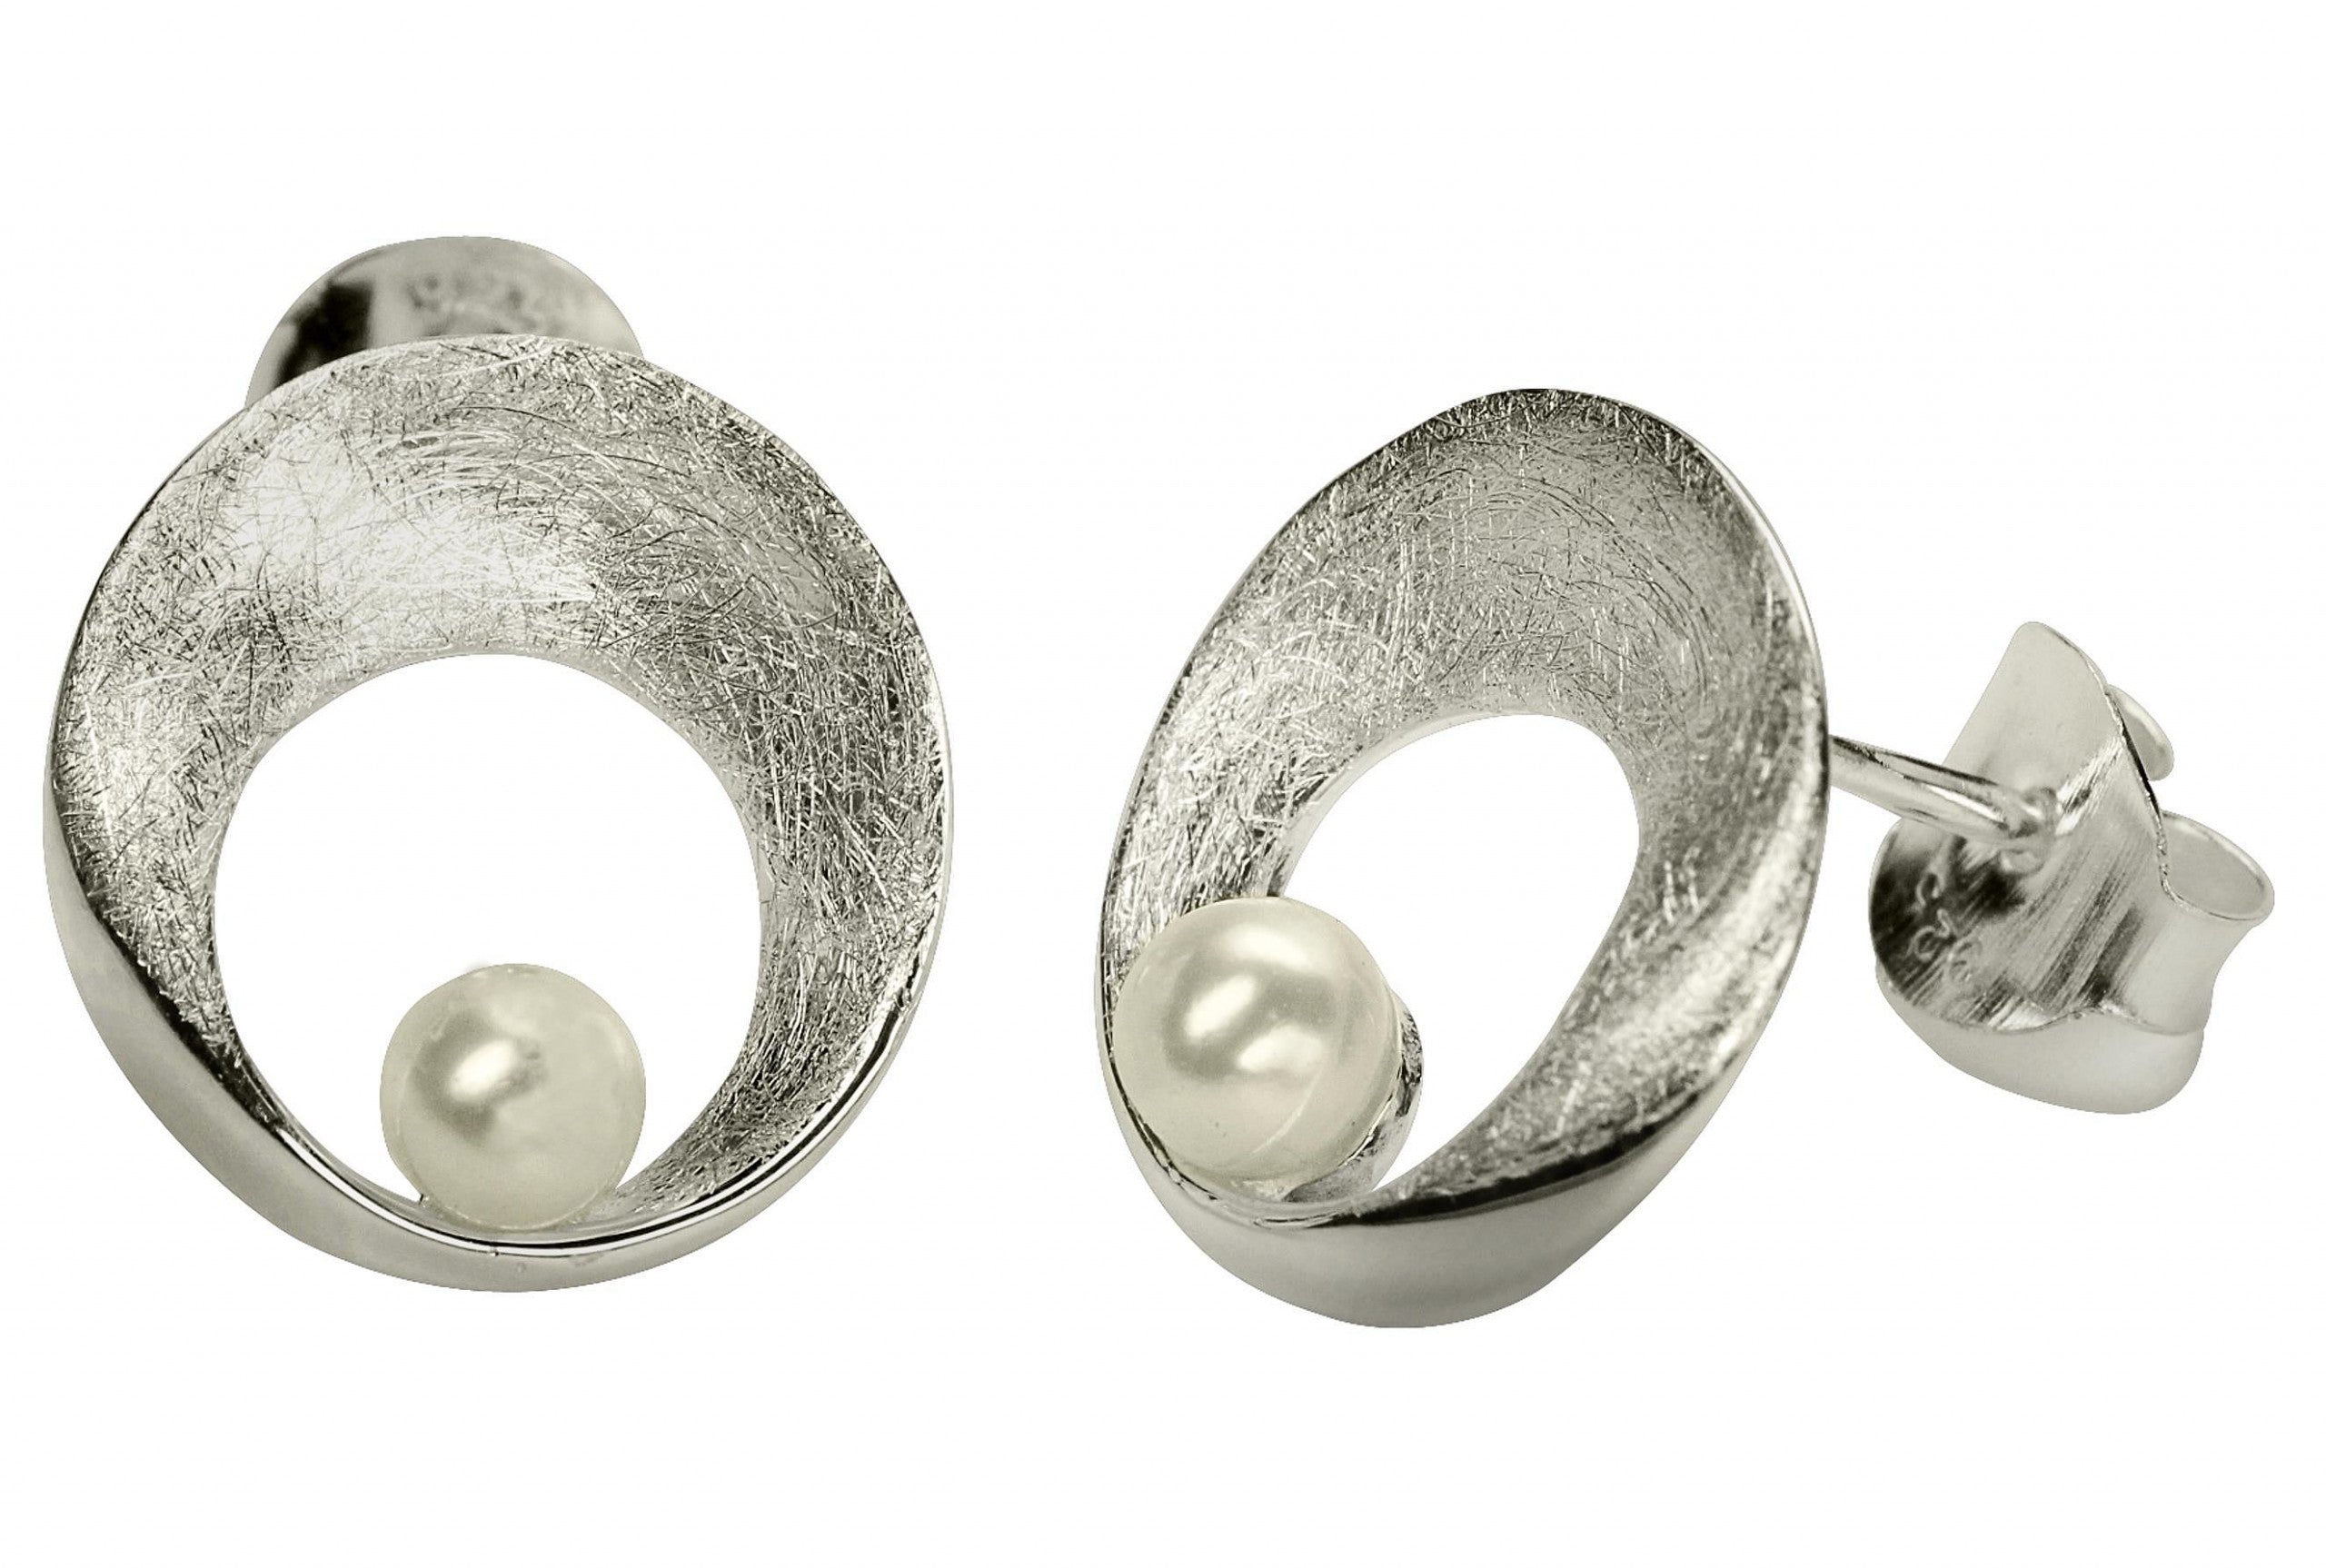 Ein rundes Paar Ohrstecker für Damen aus Silber mit einer Öffnung und einer Perle, die im unteren Bereich des Steckers sitzt.